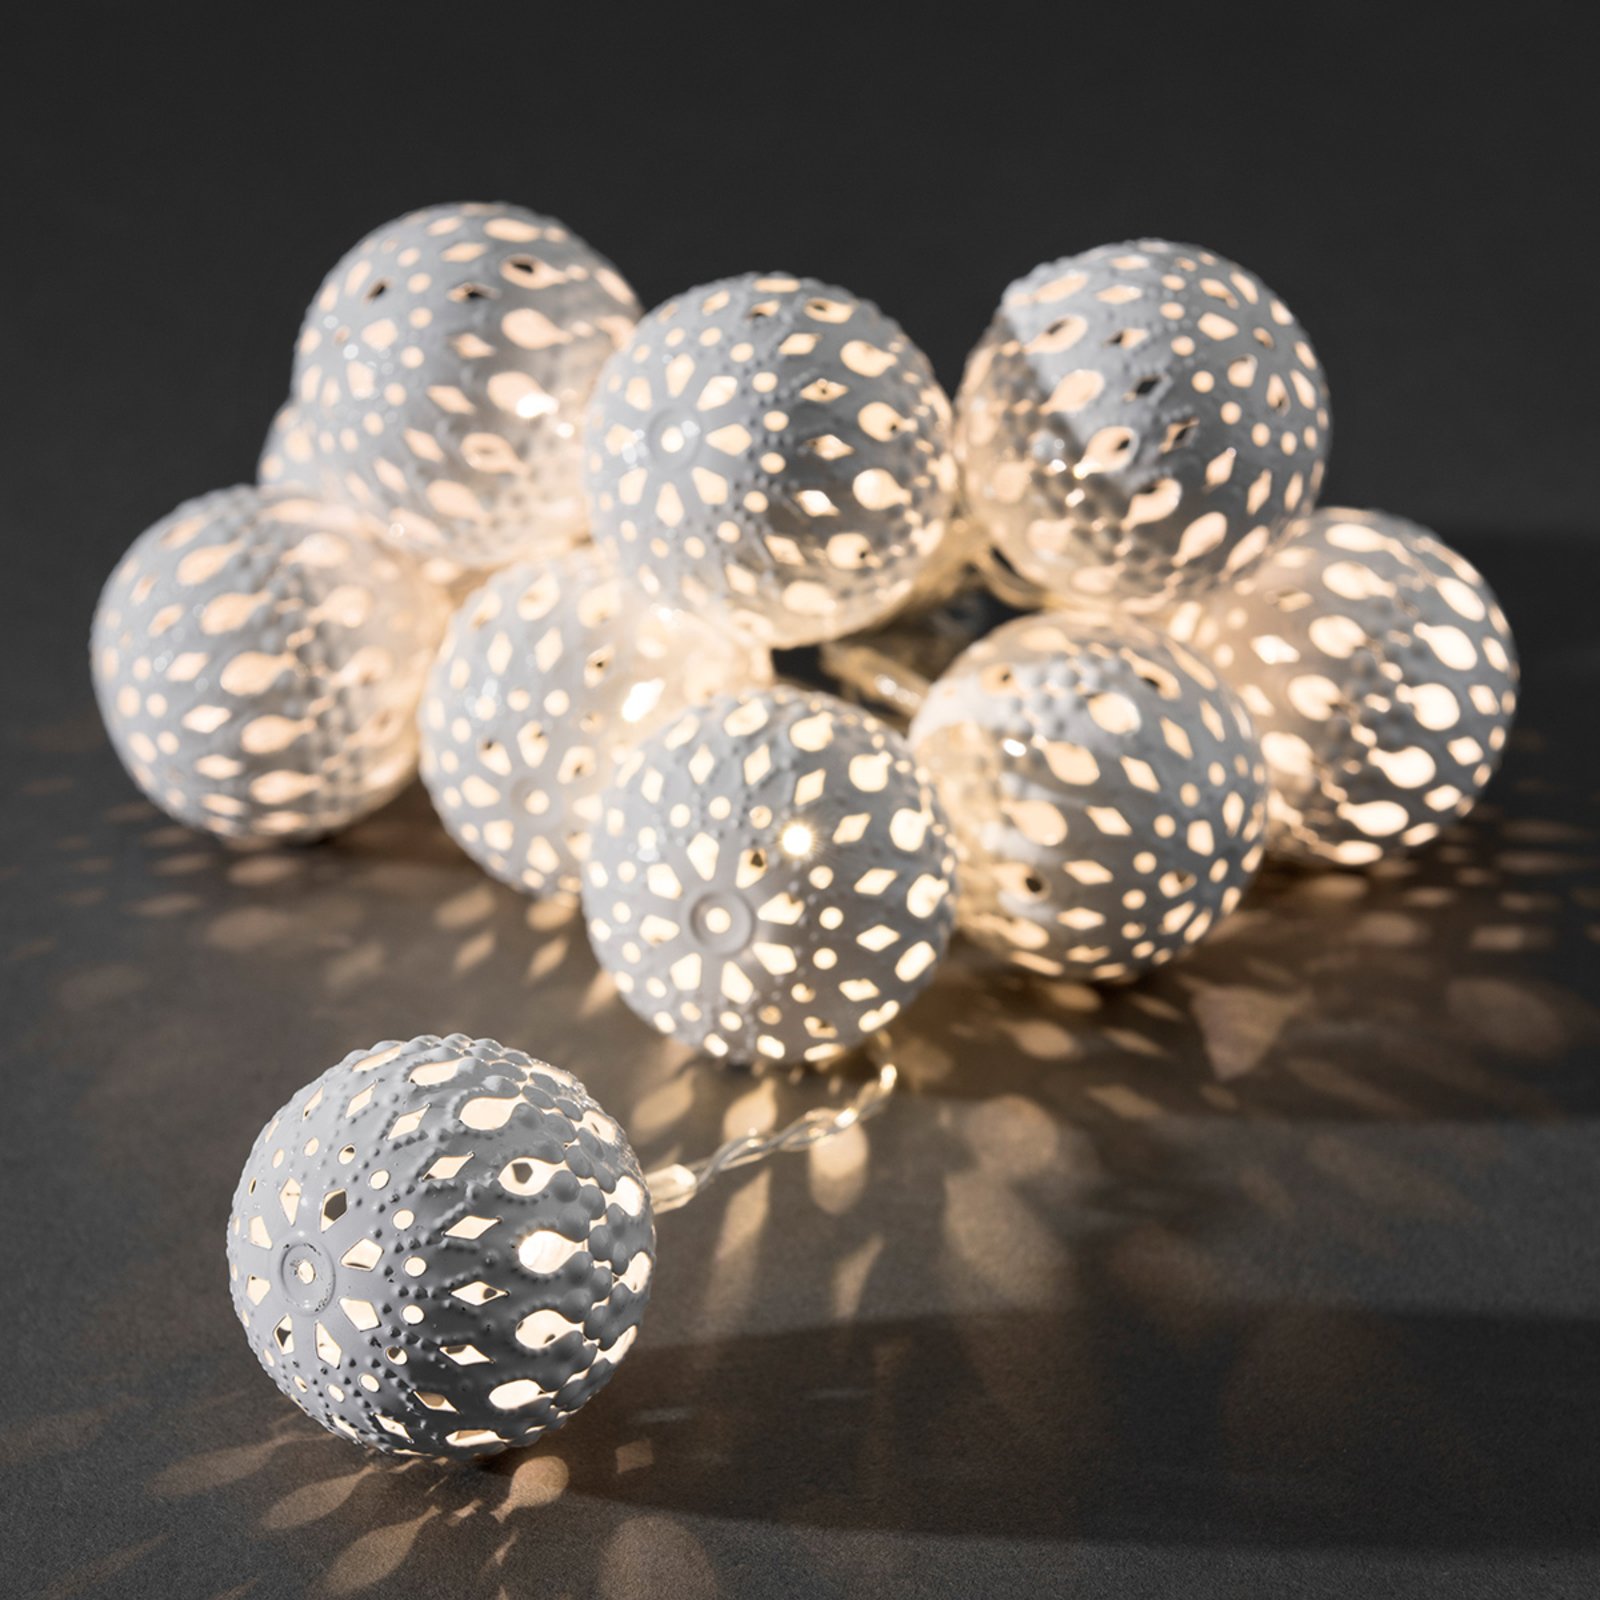 Łańcuch LED z metalowymi kulami, biały, 10pkt